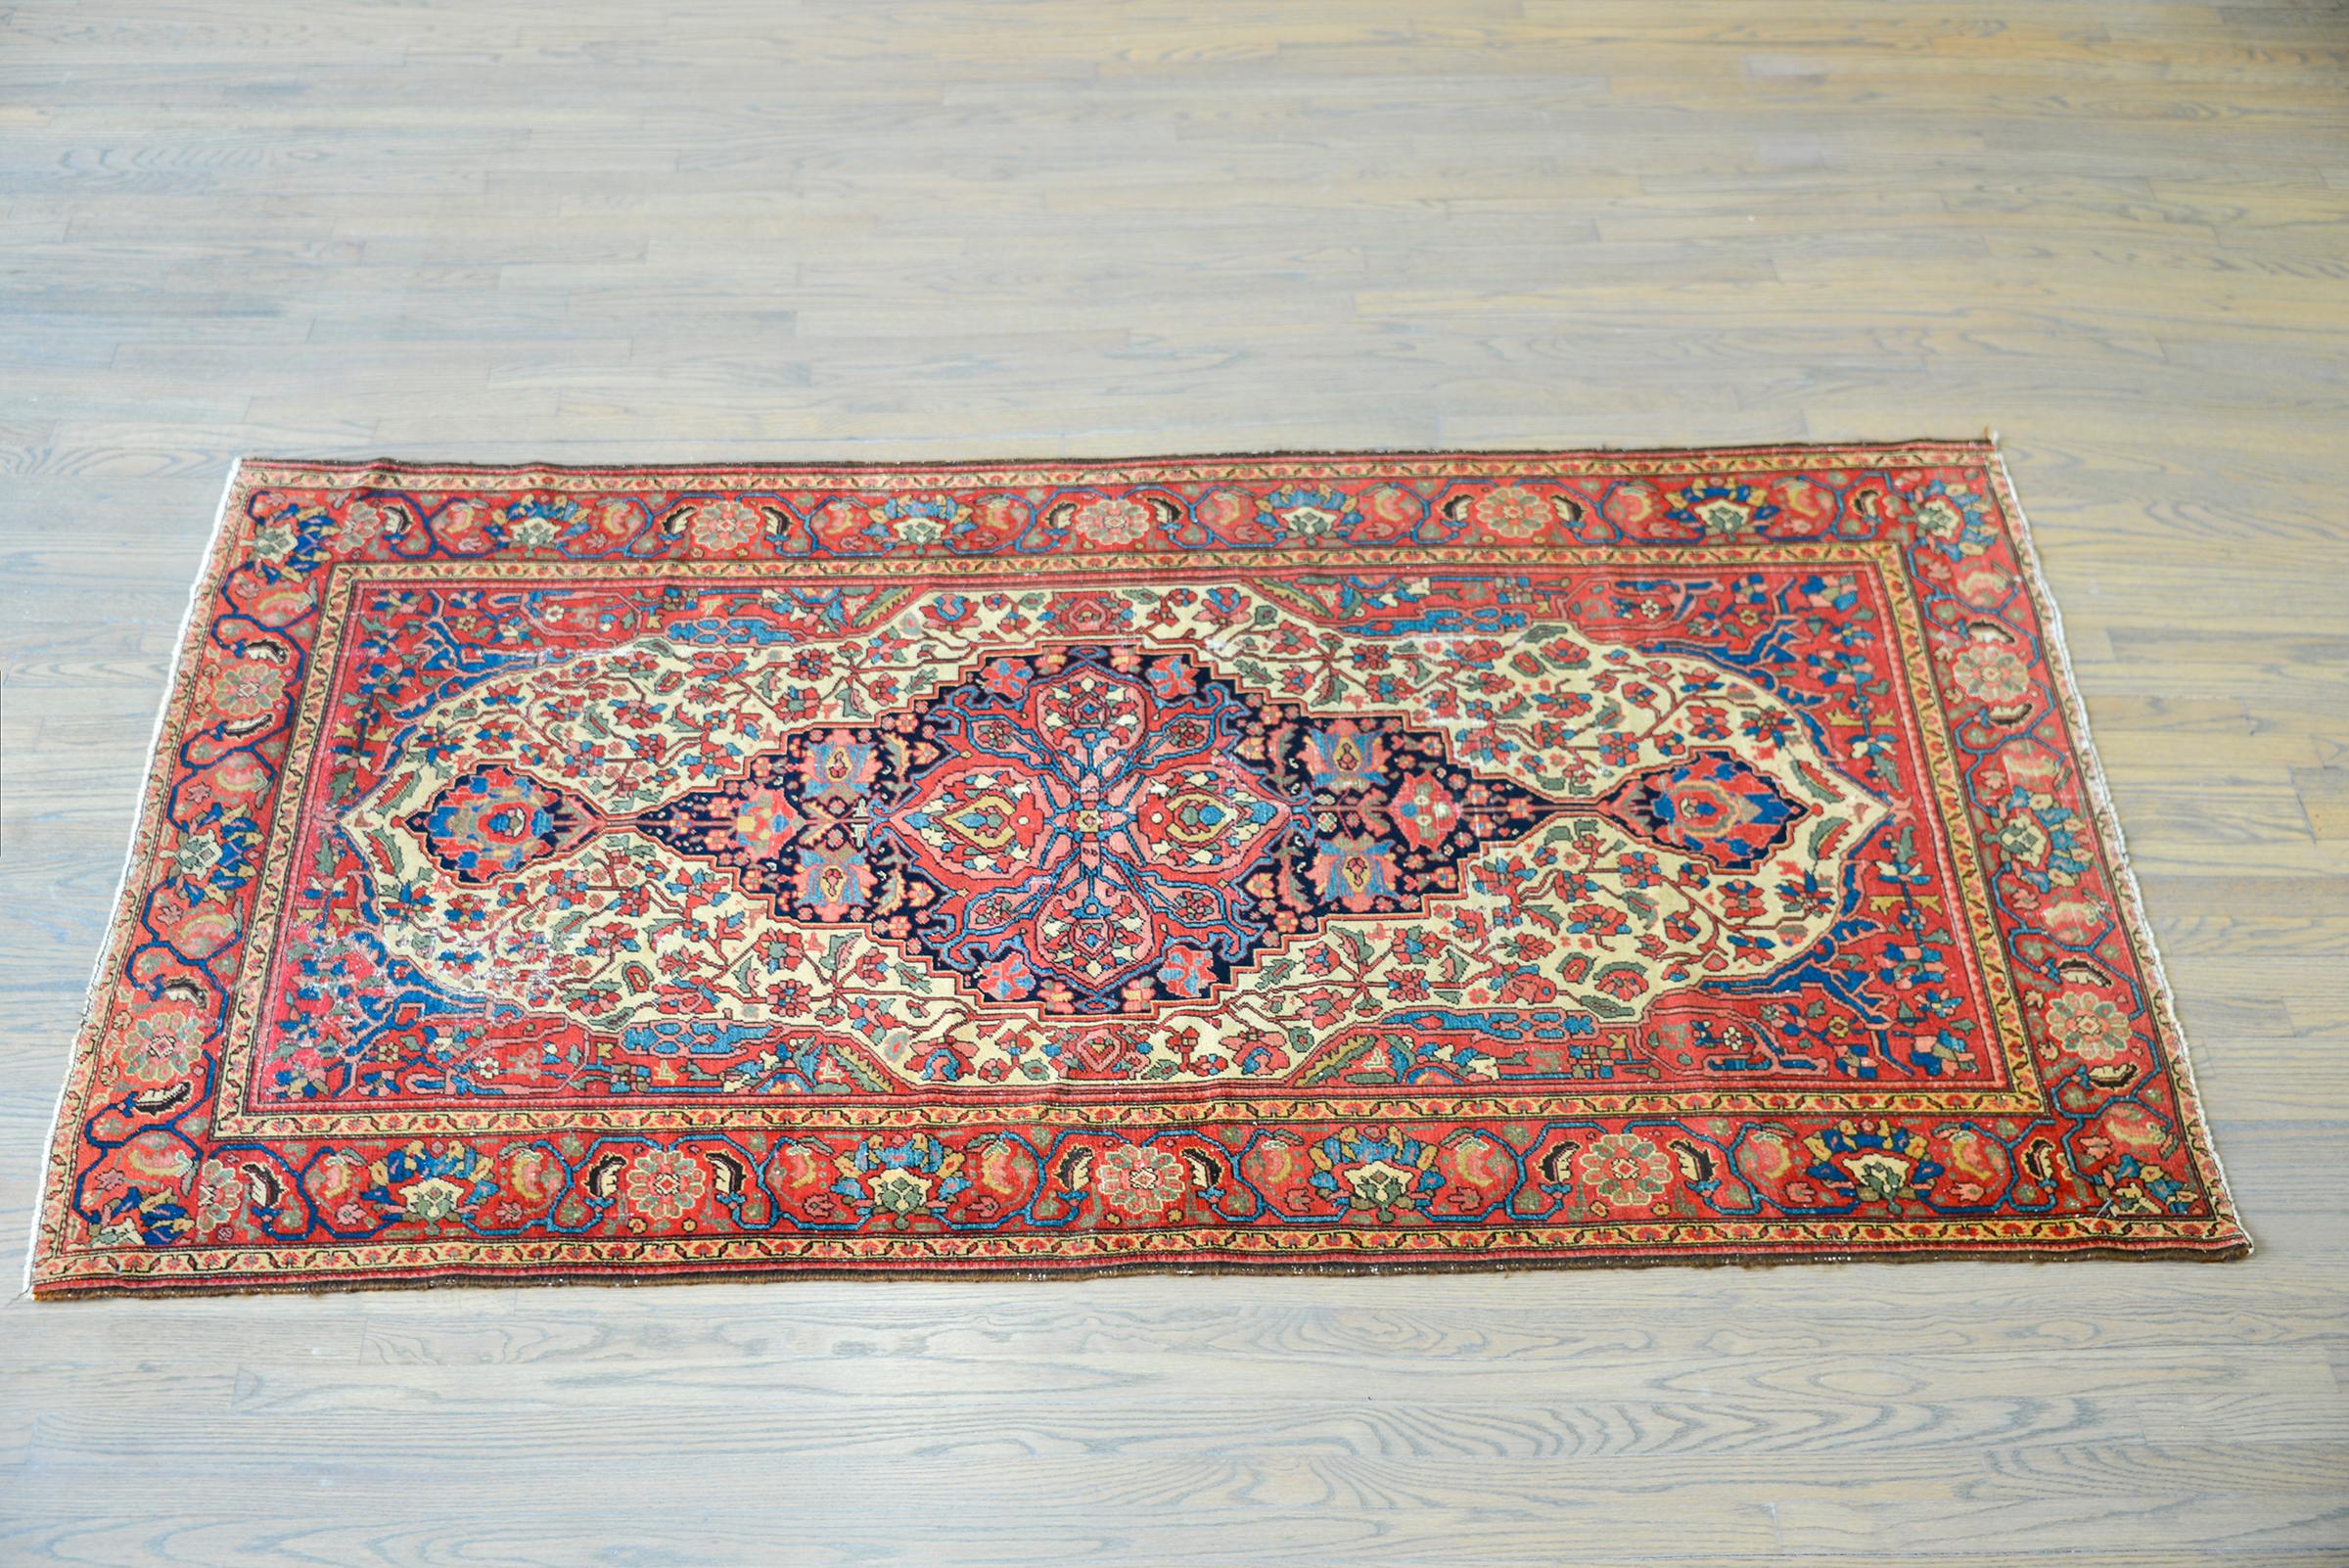 Ein wunderschöner persischer Malayer-Teppich aus dem frühen 20. Jahrhundert mit einem wunderschönen zentralen floralen Medaillon in leuchtenden Rot-, Grün-, Gold- und Indigotönen, eingefasst vor einem dunklen indigoblauen Hintergrund. Die Umrandung